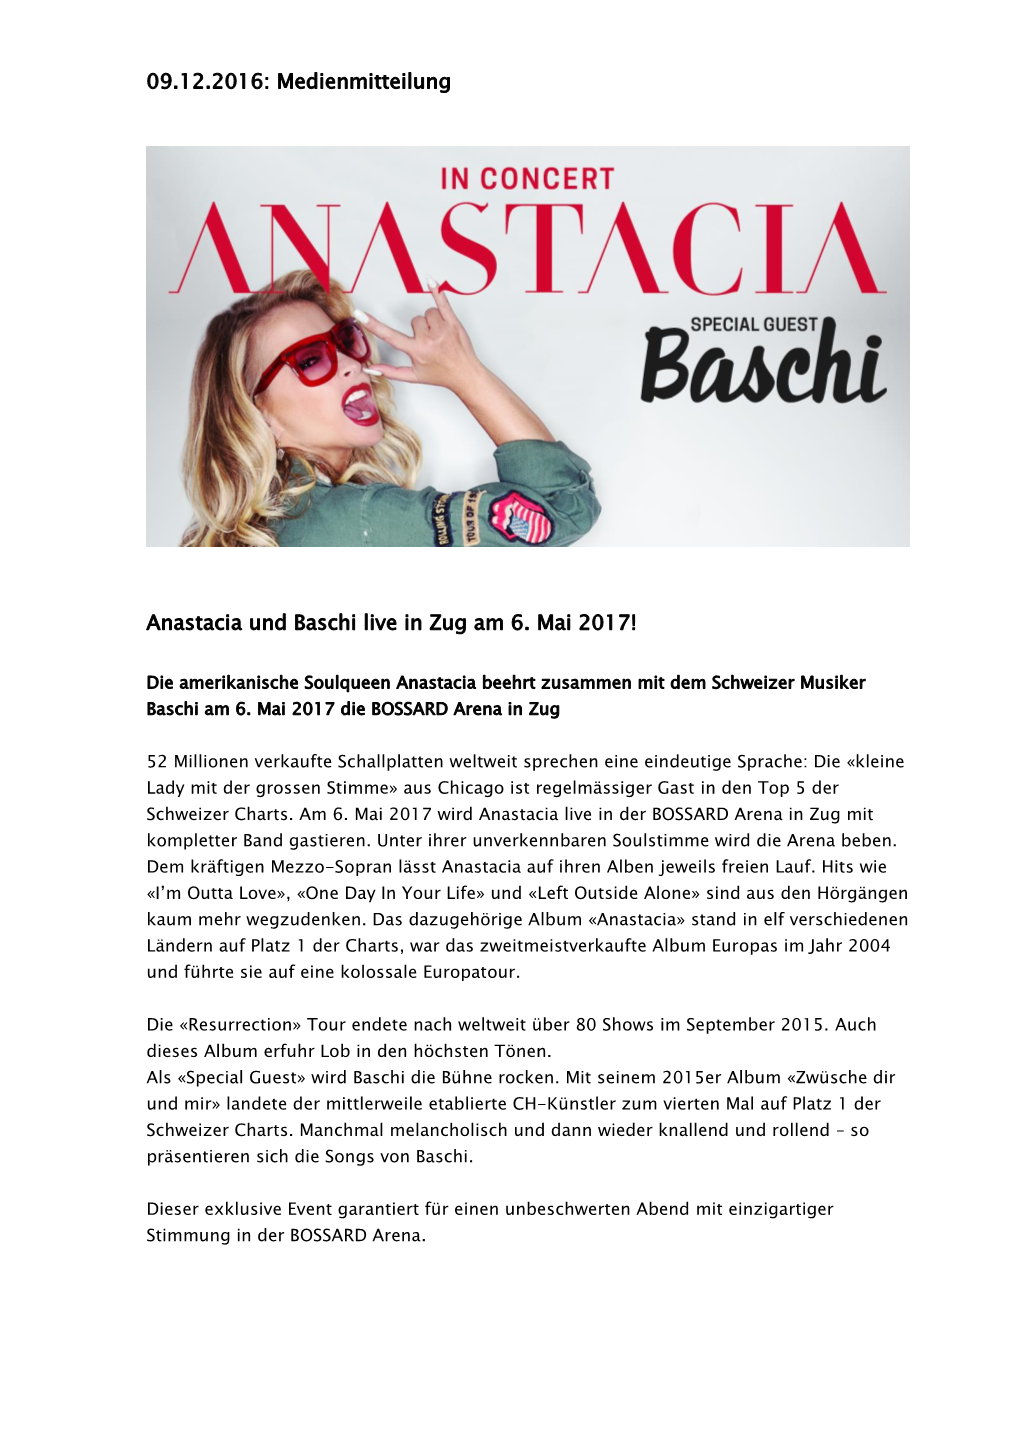 Medienmitteilung Anastacia Und Baschi Live in Zug